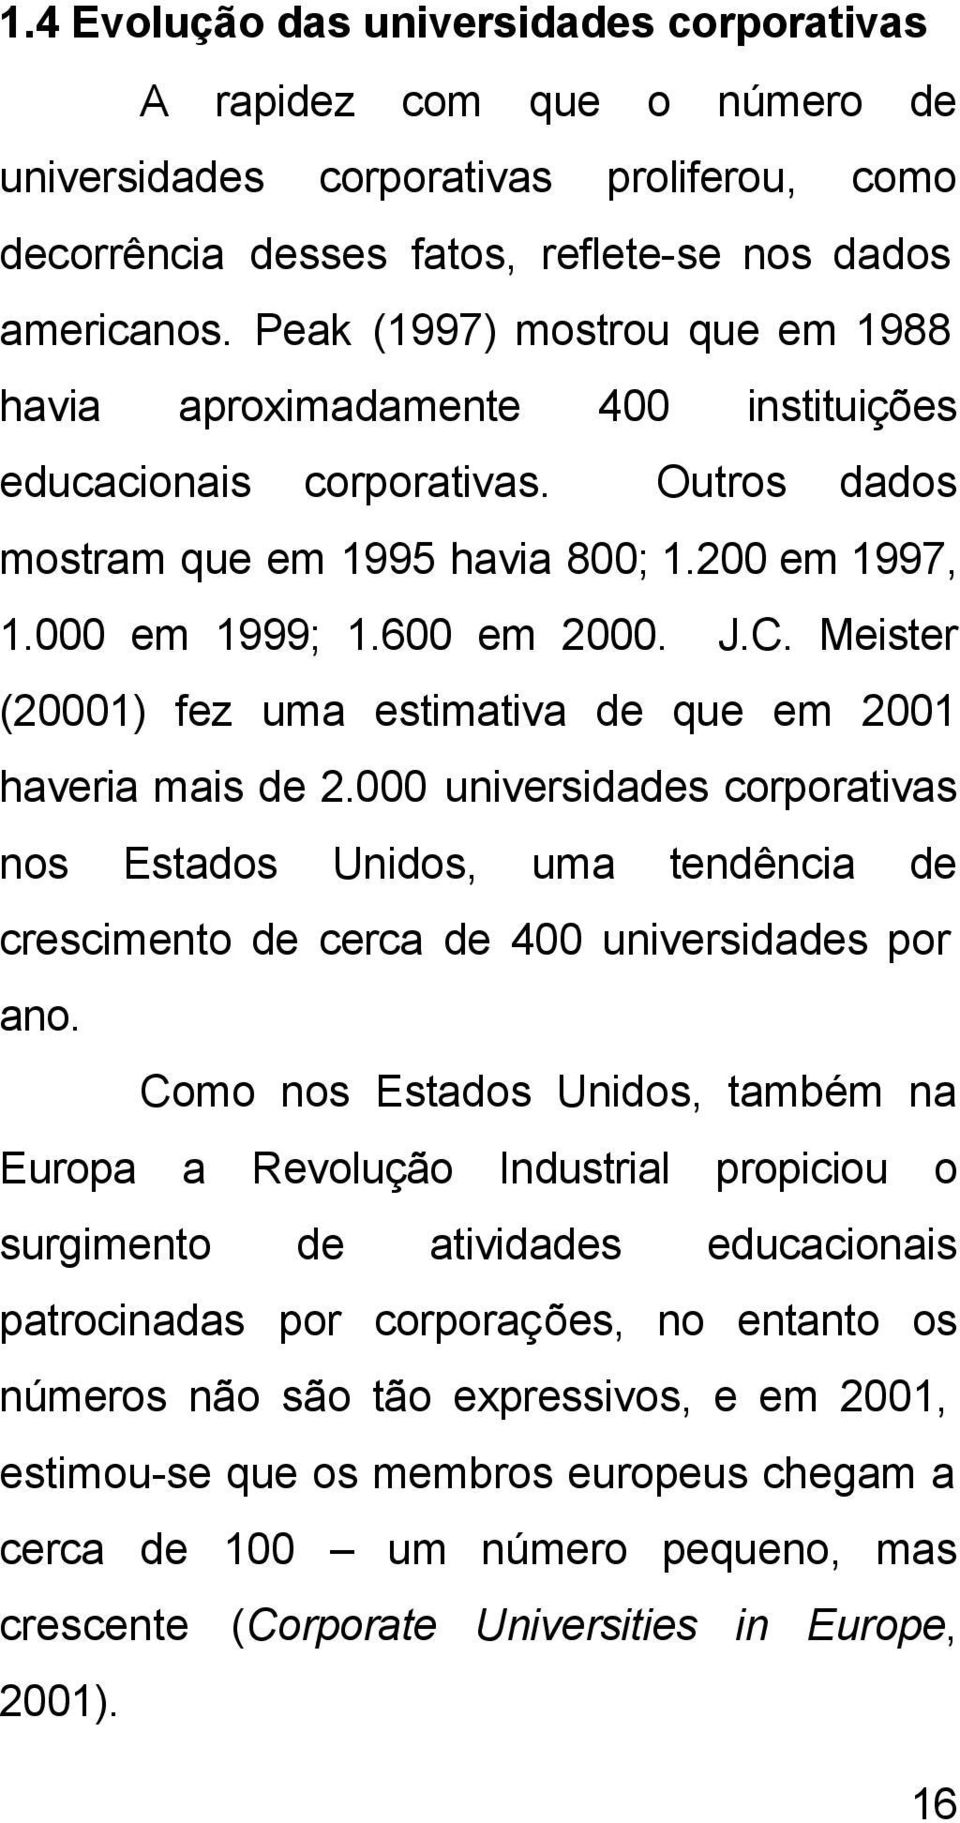 Meister (20001) fez uma estimativa de que em 2001 haveria mais de 2.000 universidades corporativas nos Estados Unidos, uma tendência de crescimento de cerca de 400 universidades por ano.